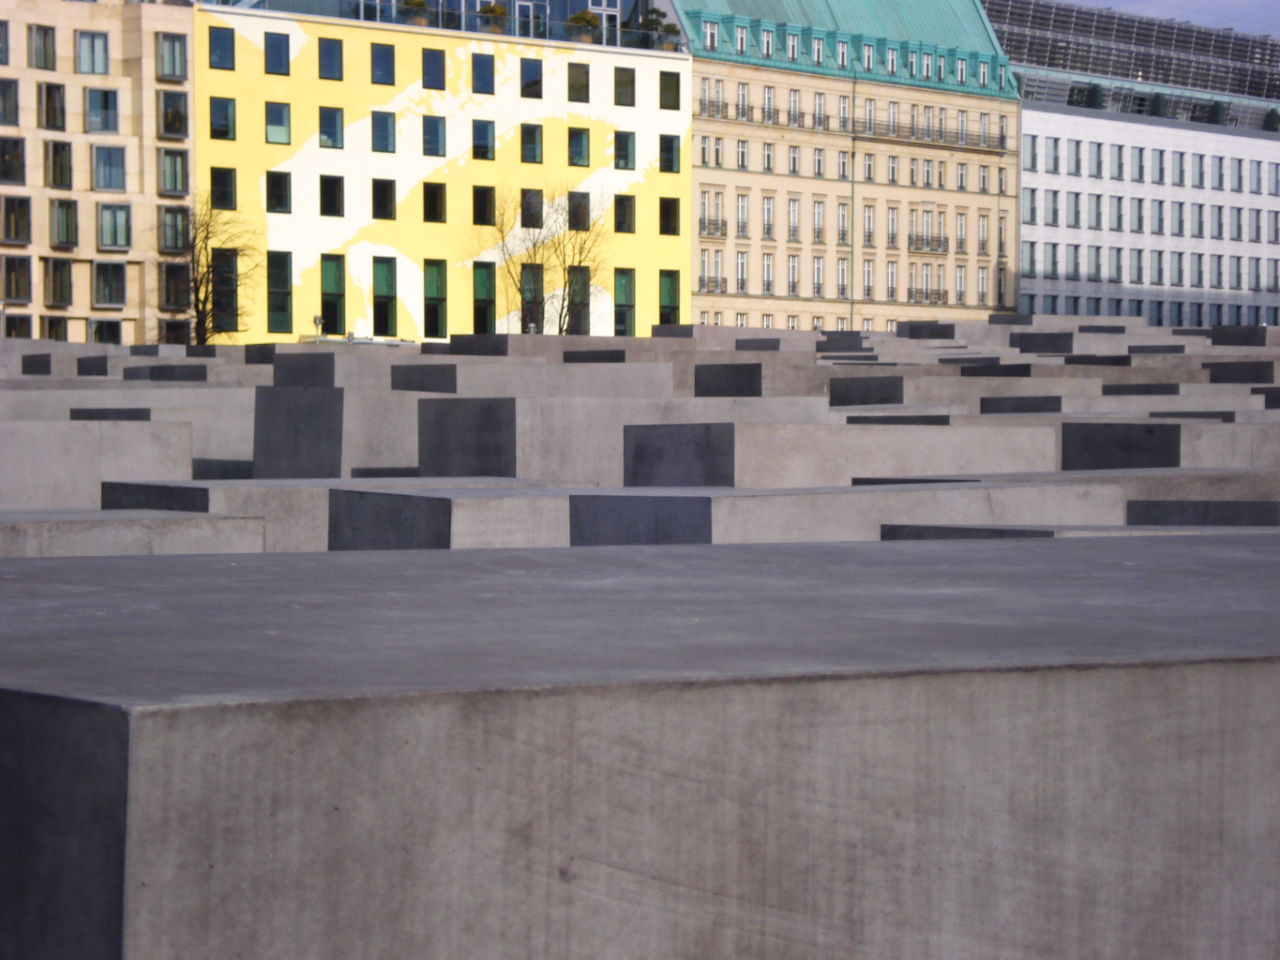 Berlino: Memoriale per gli ebrei assassinati d'Europa